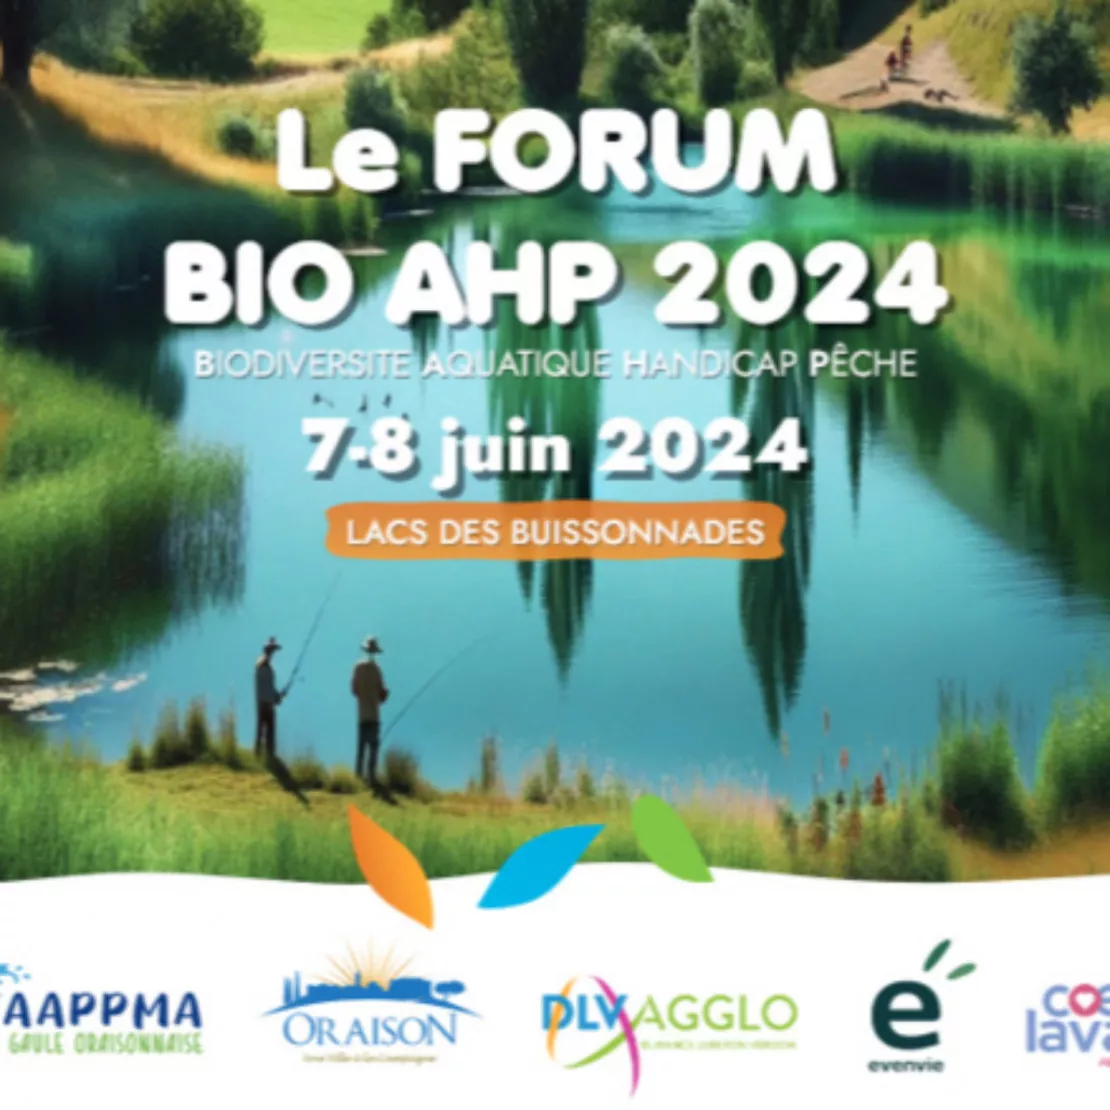 Alpes 1 & Vous : forum BIO AHP - 7et 8 juin 2024